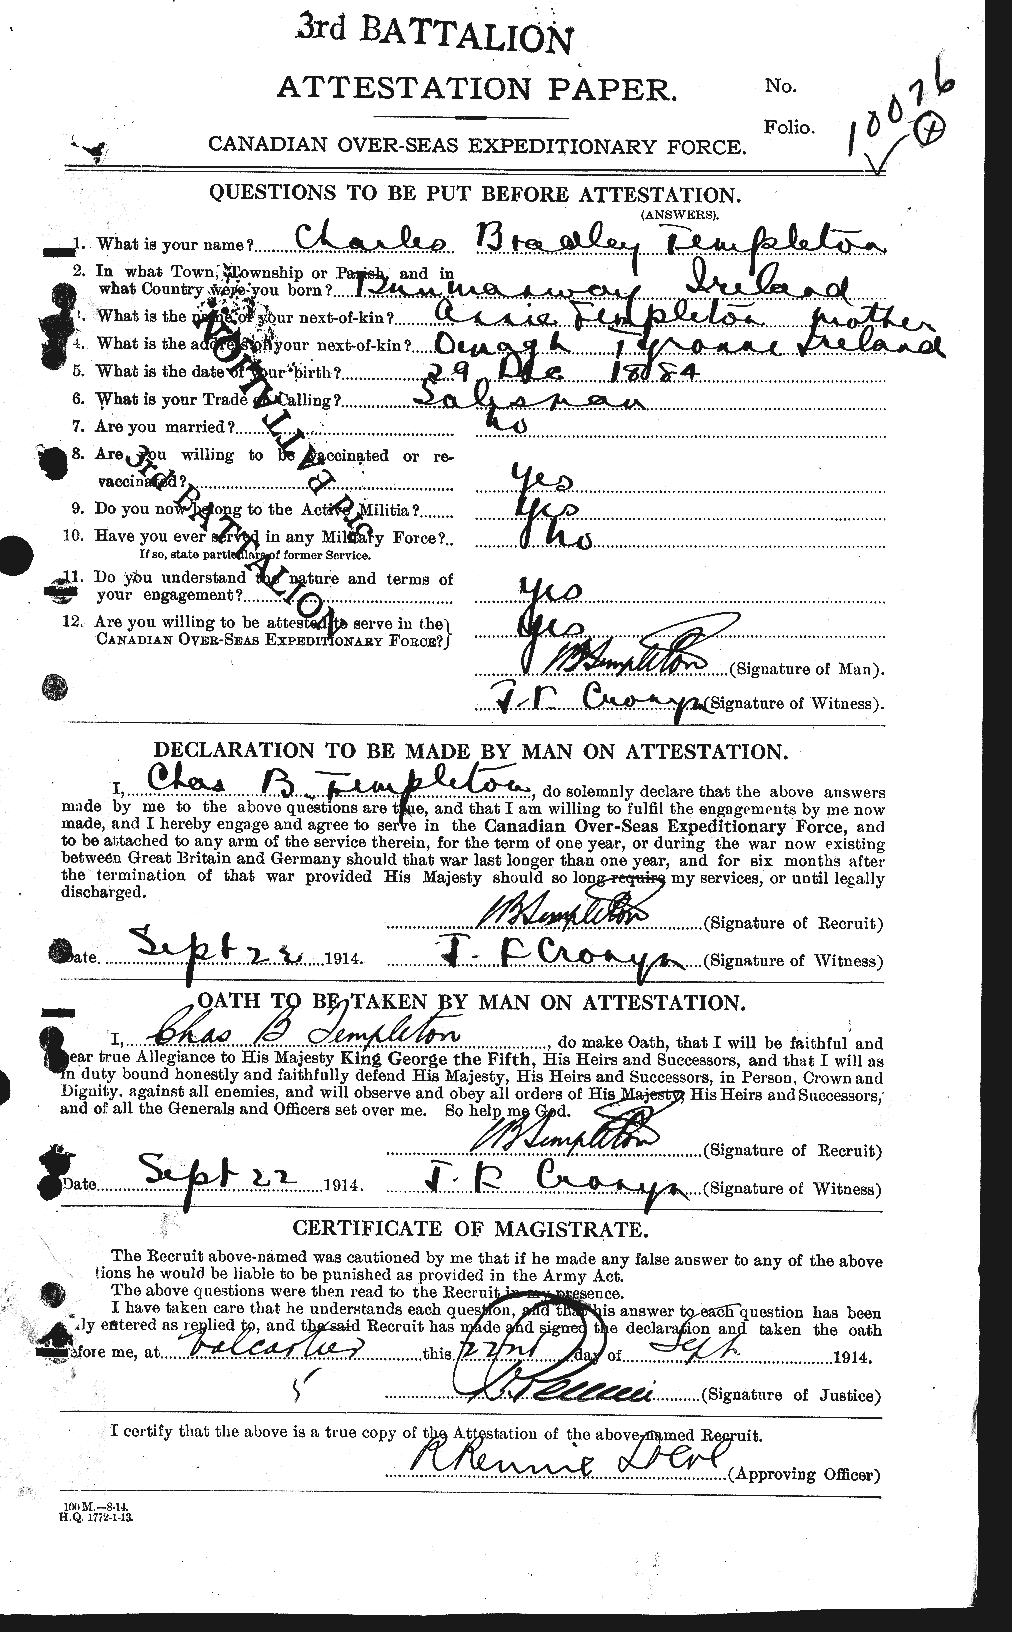 Dossiers du Personnel de la Première Guerre mondiale - CEC 629146a